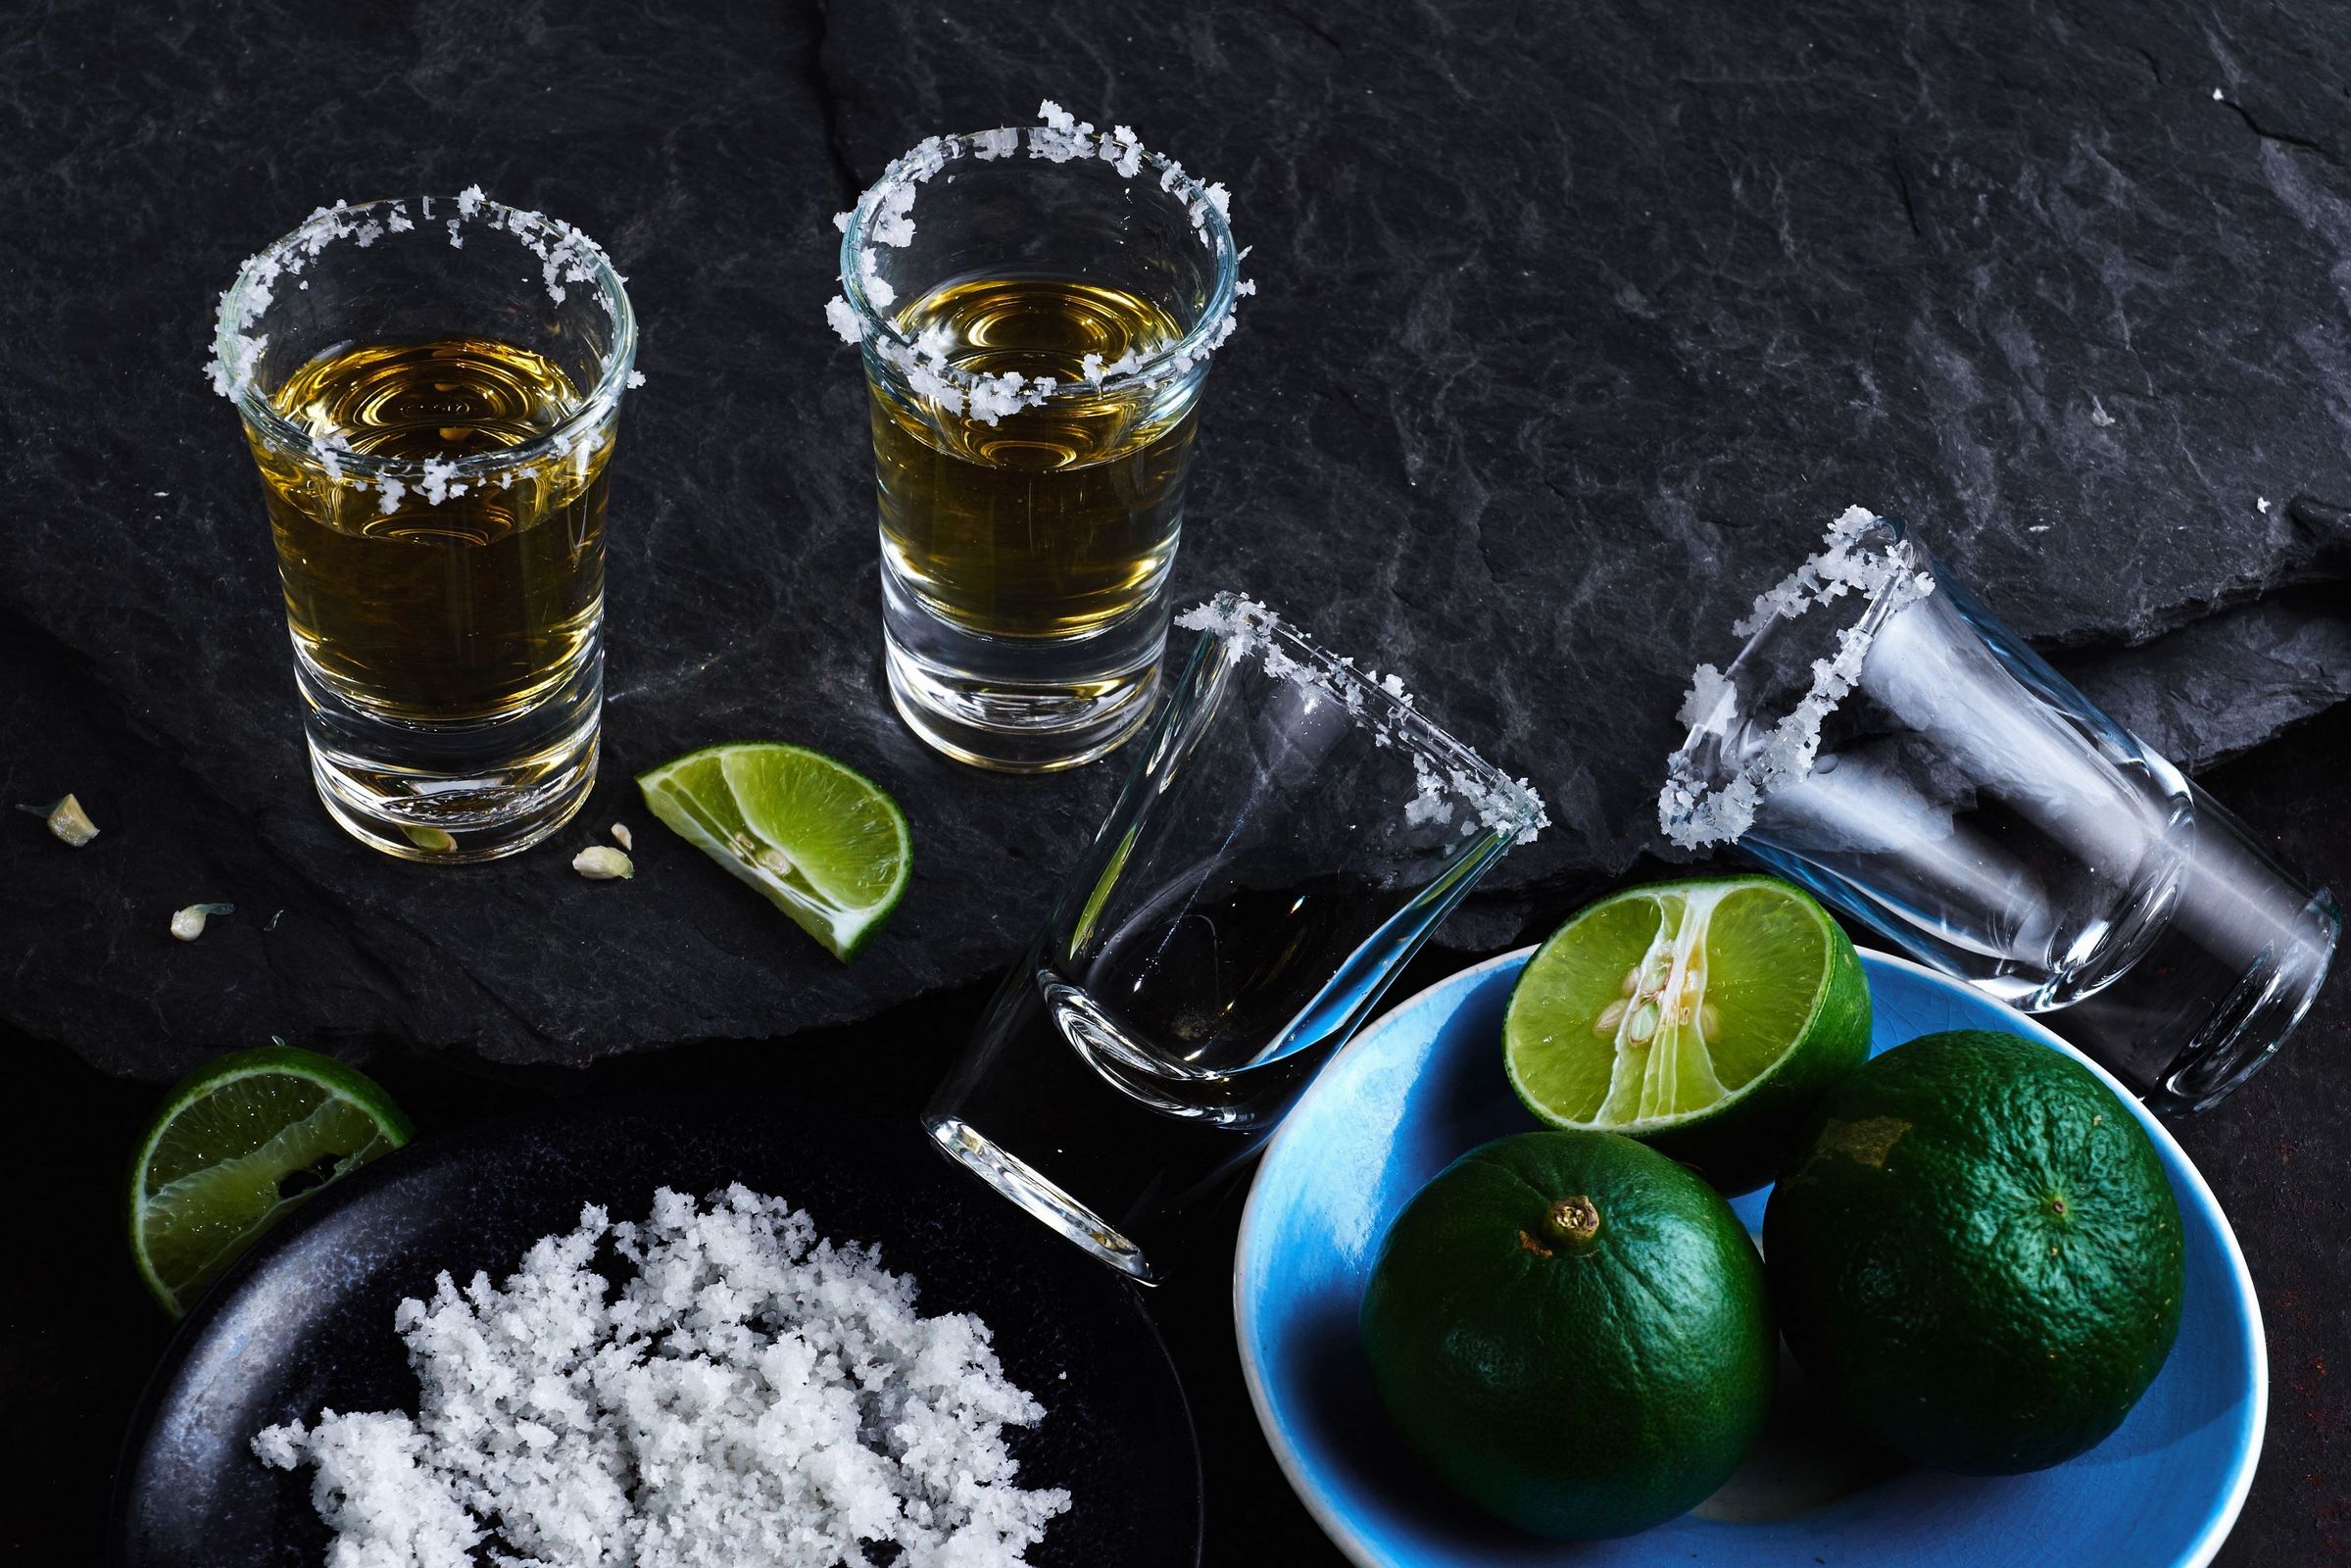 Rugido estornudar olvidar 12 tragos de tequila que harán vibrar tu fiesta